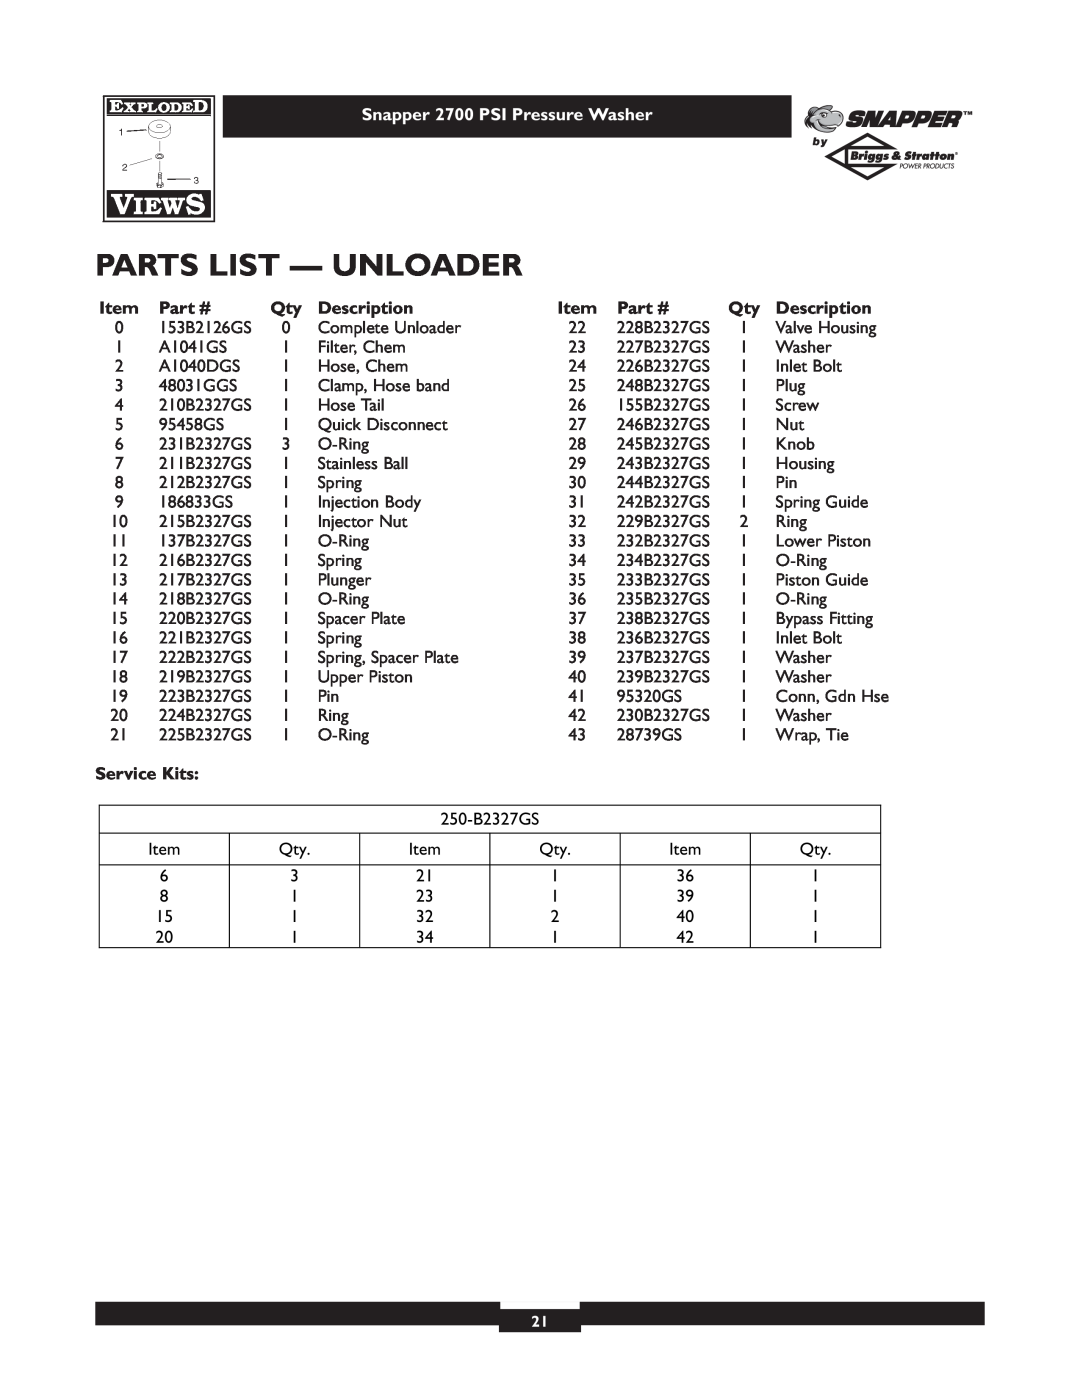 Snapper 1661-0 owner manual Parts List - Unloader, Snapper 2700 PSI Pressure Washer, Description, Service Kits 